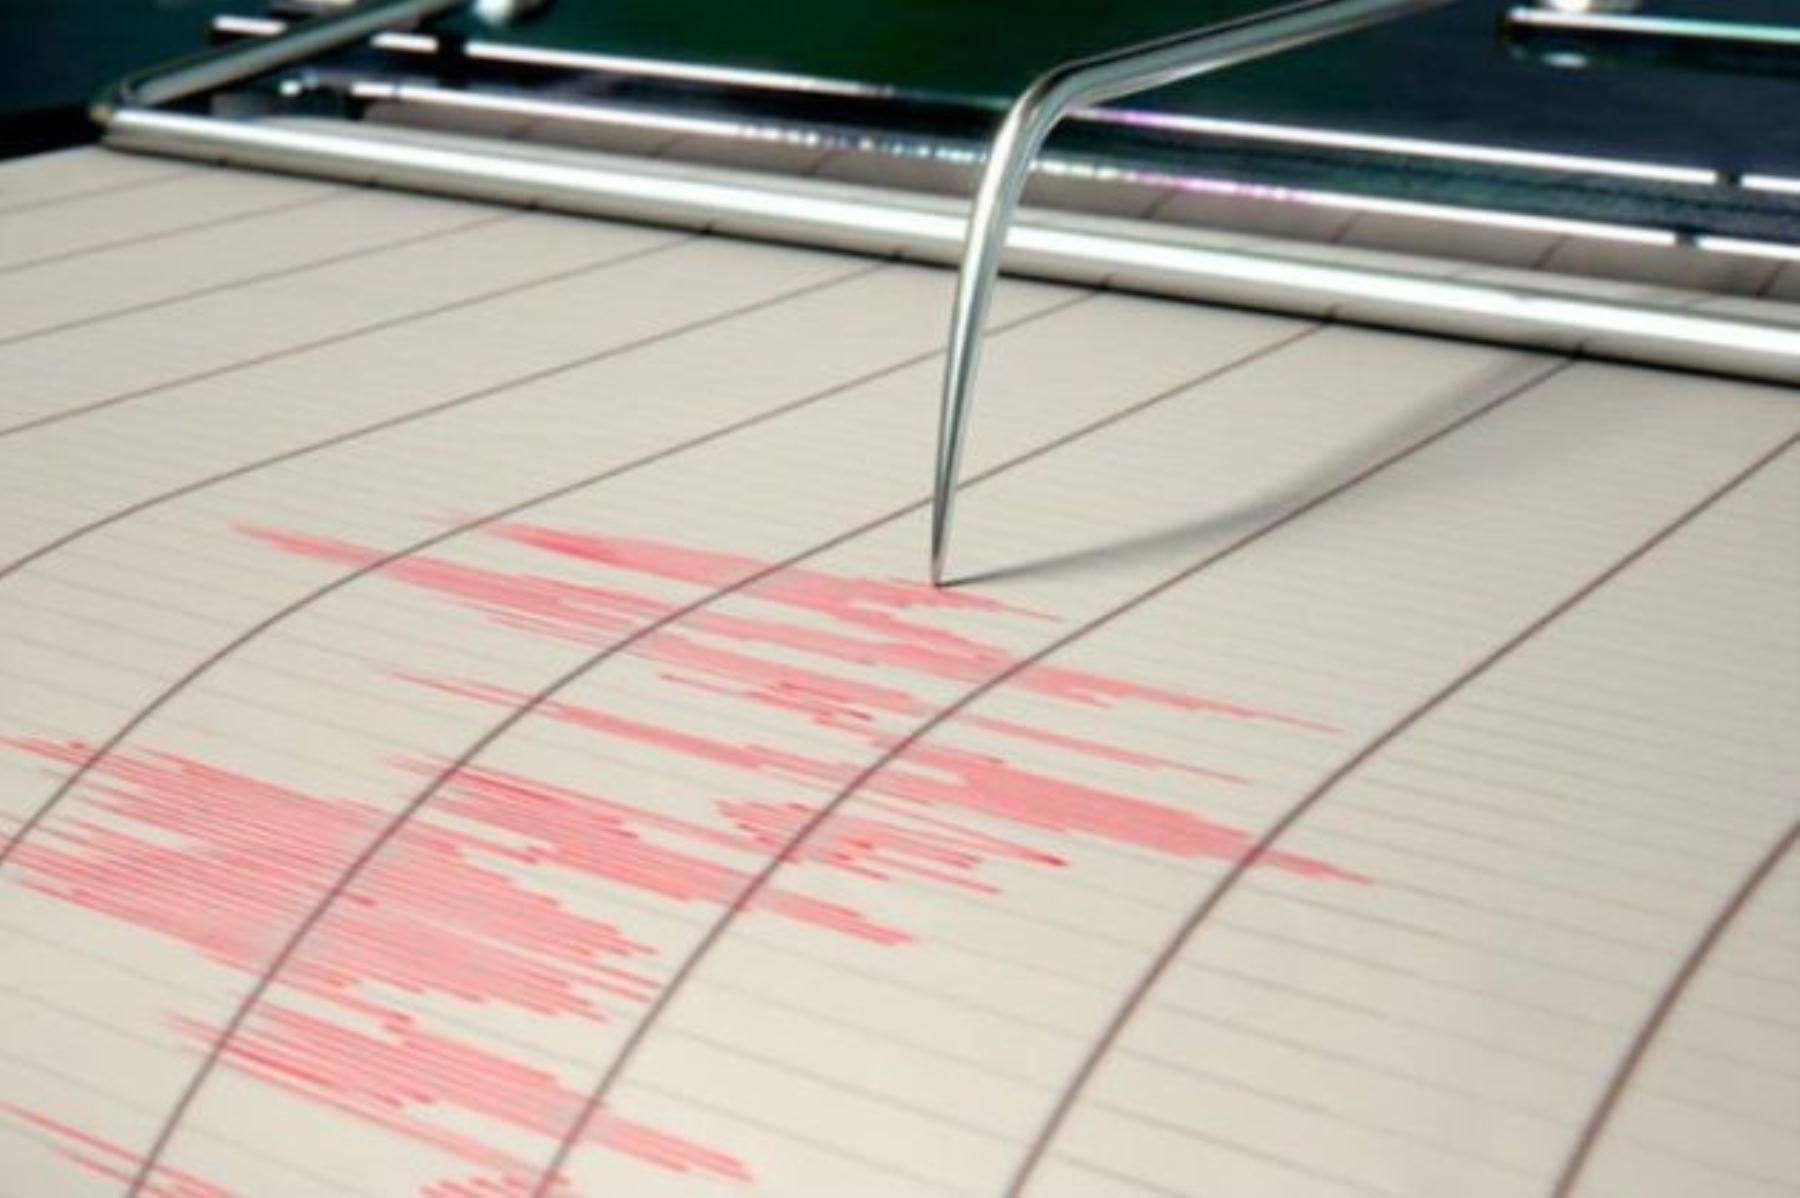 Un sismo de magnitud 5.5 se registró hoy en Huarmey, en la región Áncash, informó el Instituto Geofísico del Perú (IGP).